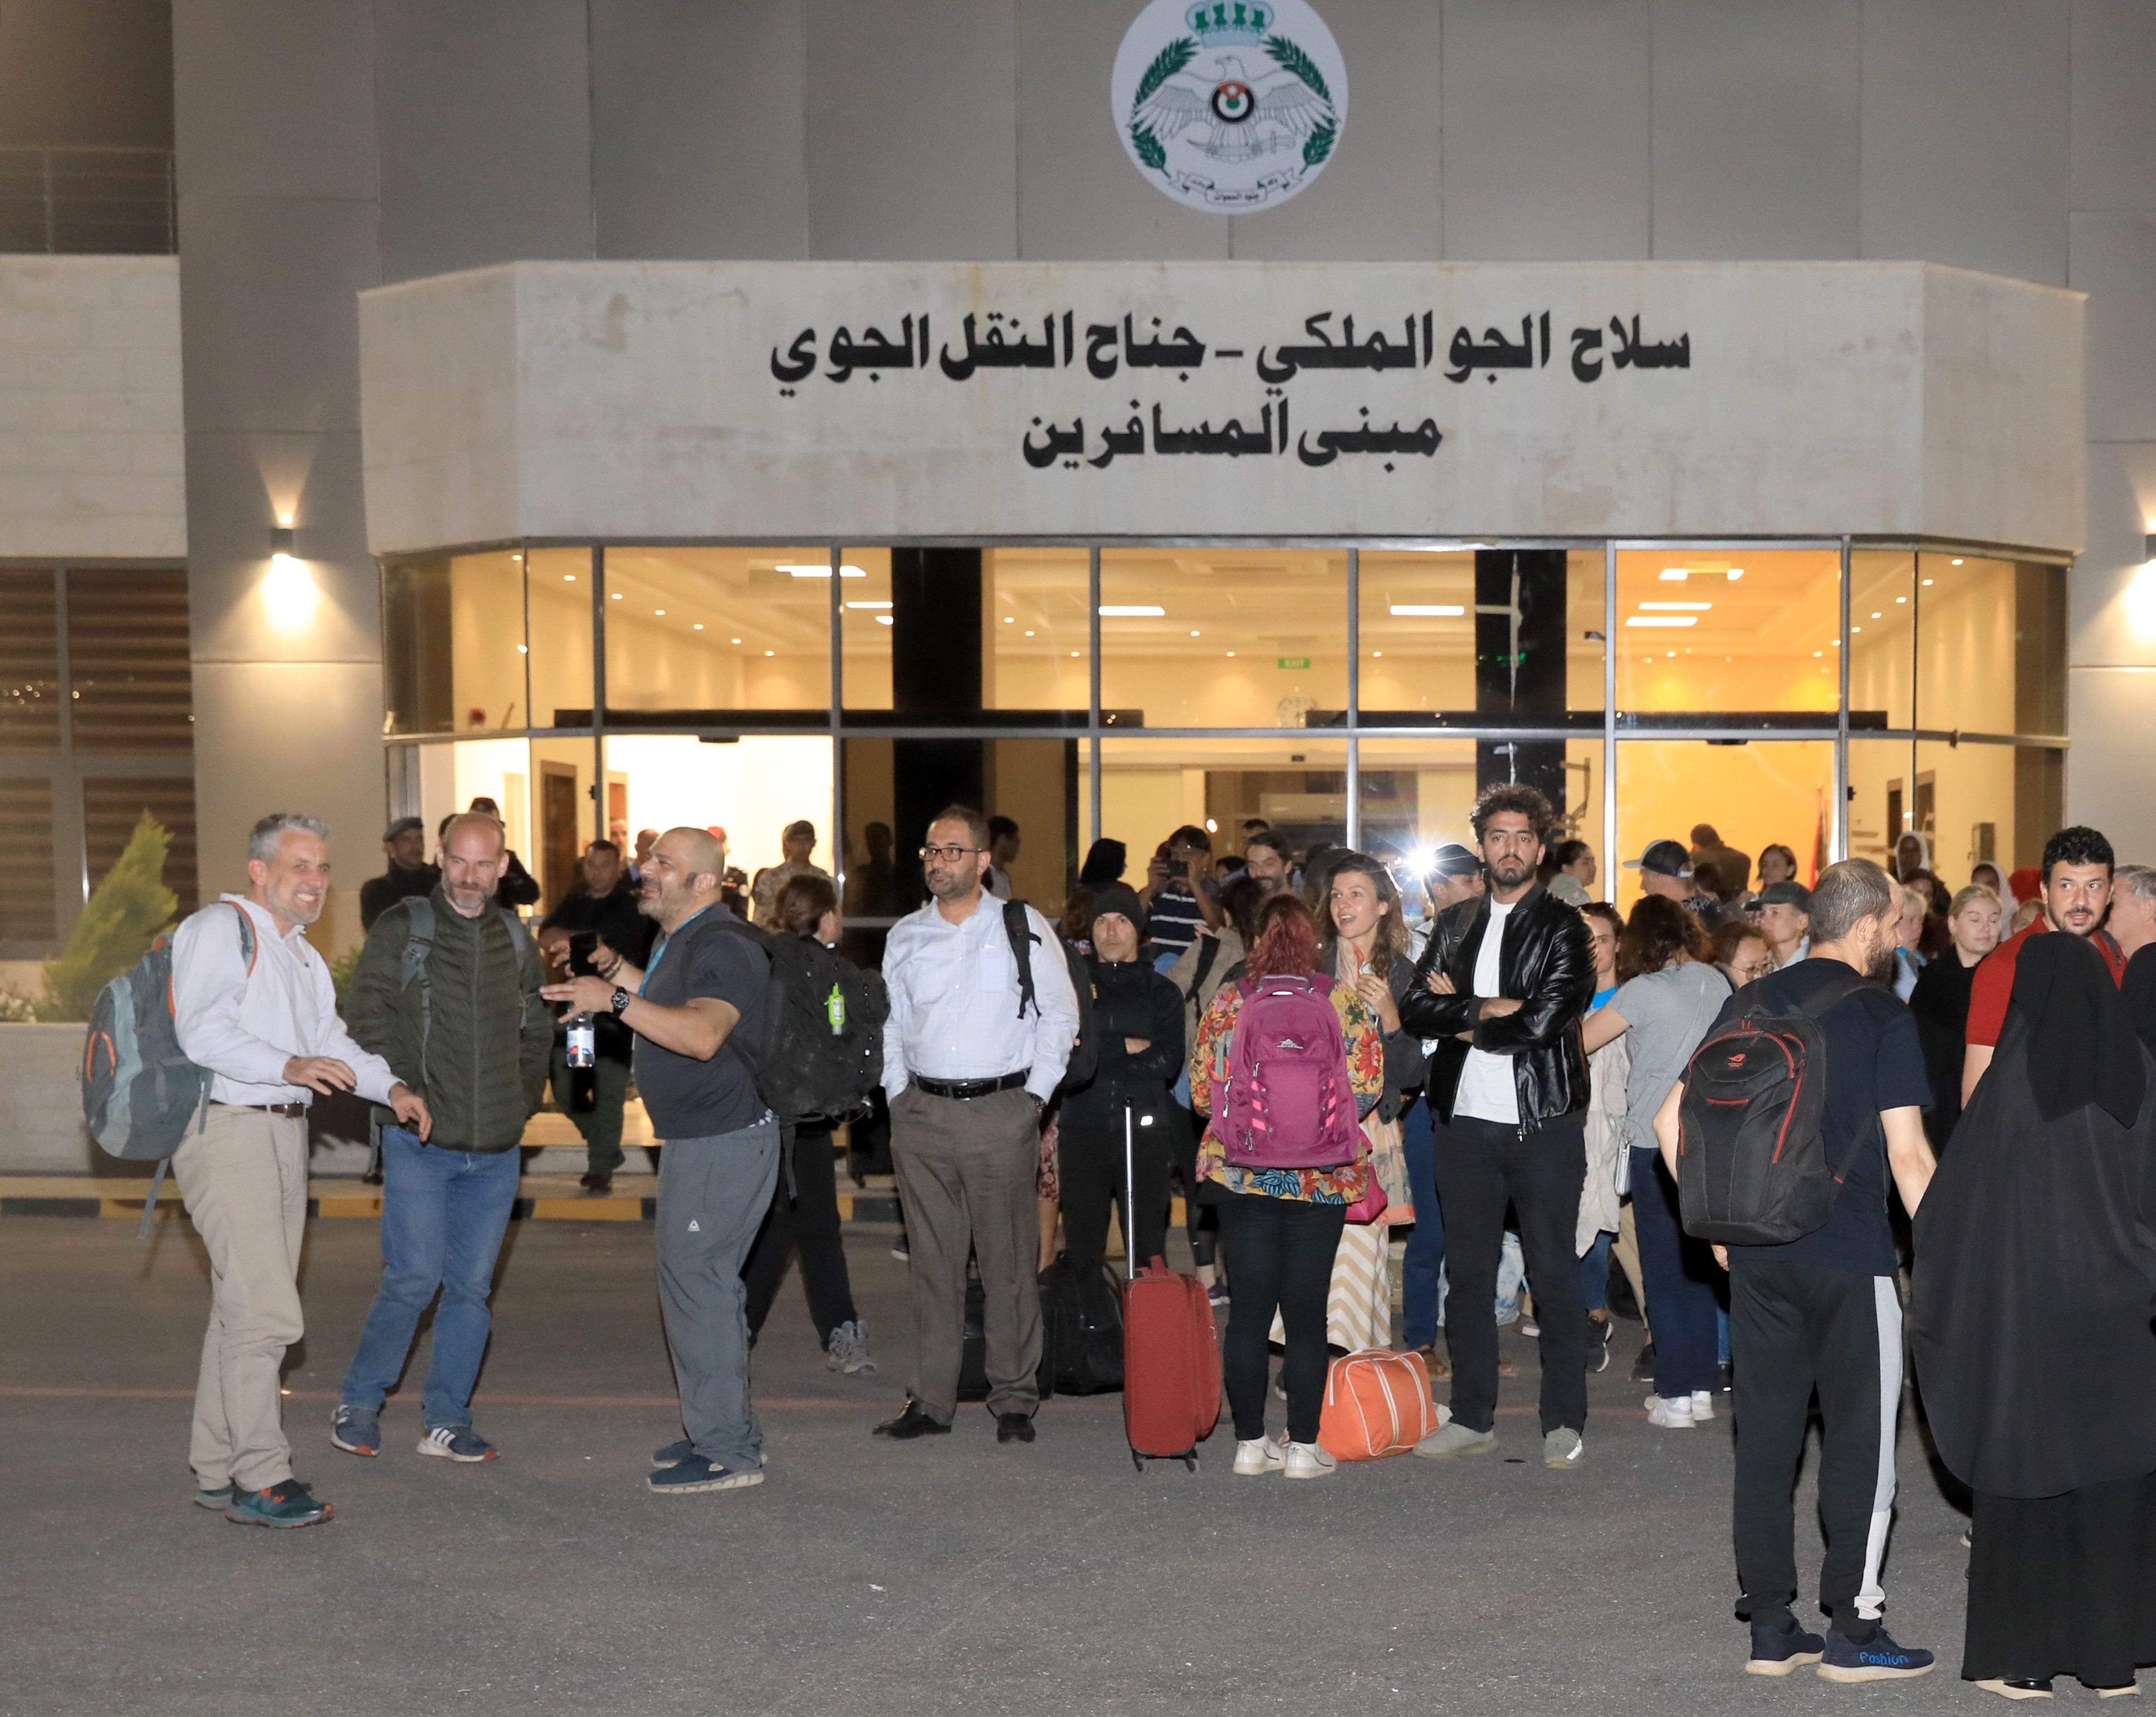 وصول طائرتي إجلاء تقلّان 81 أردنياً وجنسيات عربية وأجنبية